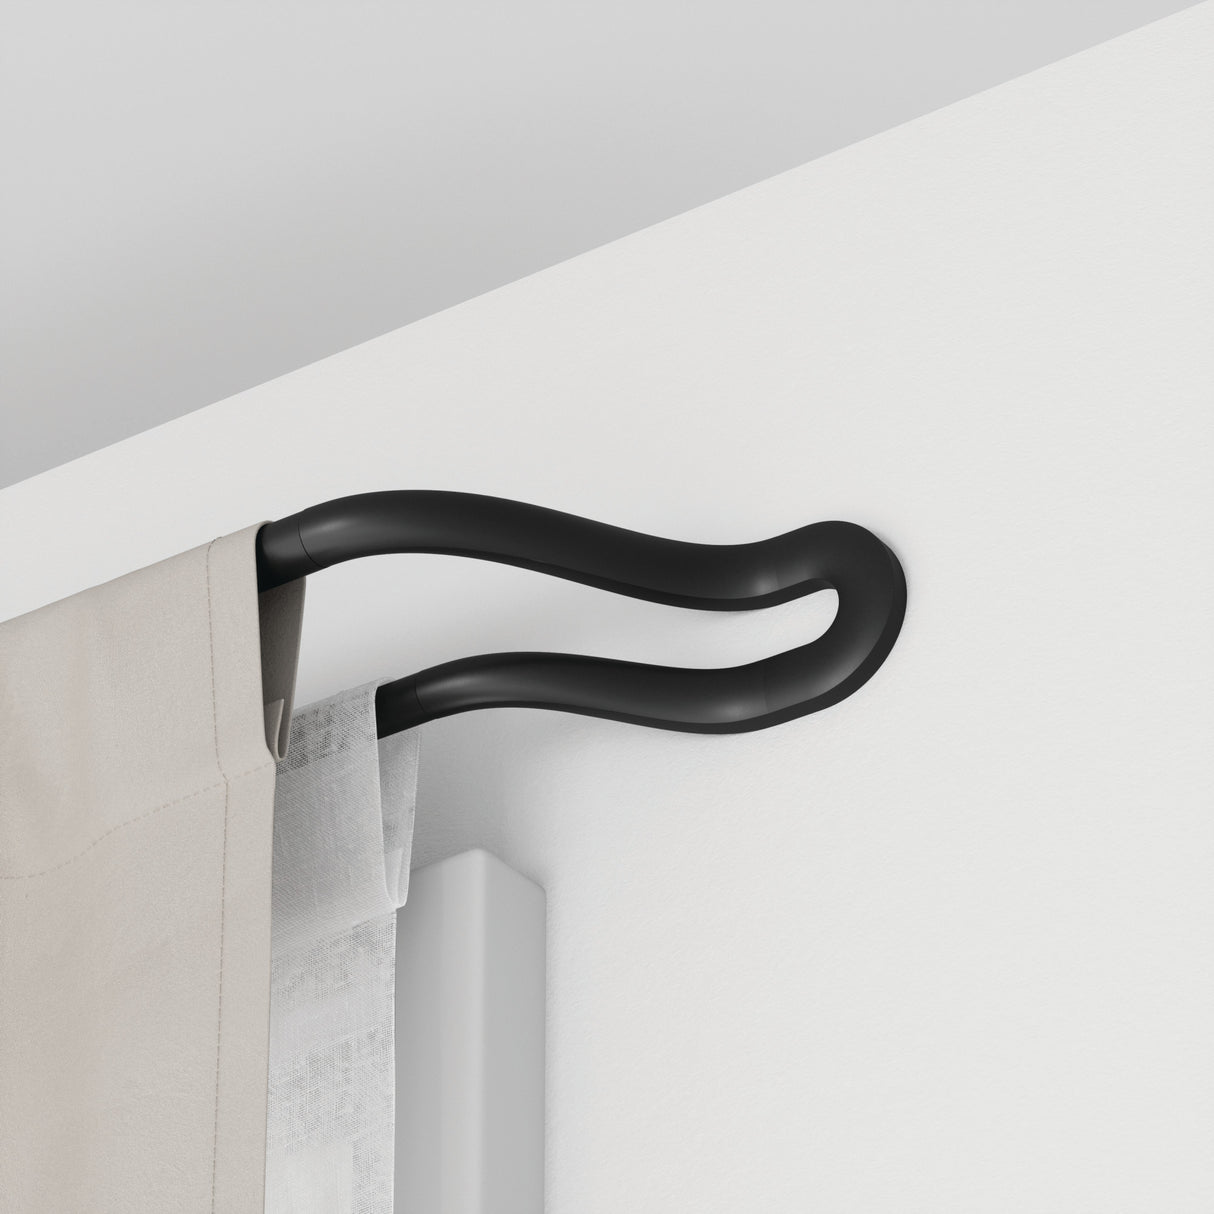 Double Curtain Rods | color: Matte Black | size: 42-120" (107-305 cm) | diameter: 3/4" (1.9cm) | https://vimeo.com/680591450